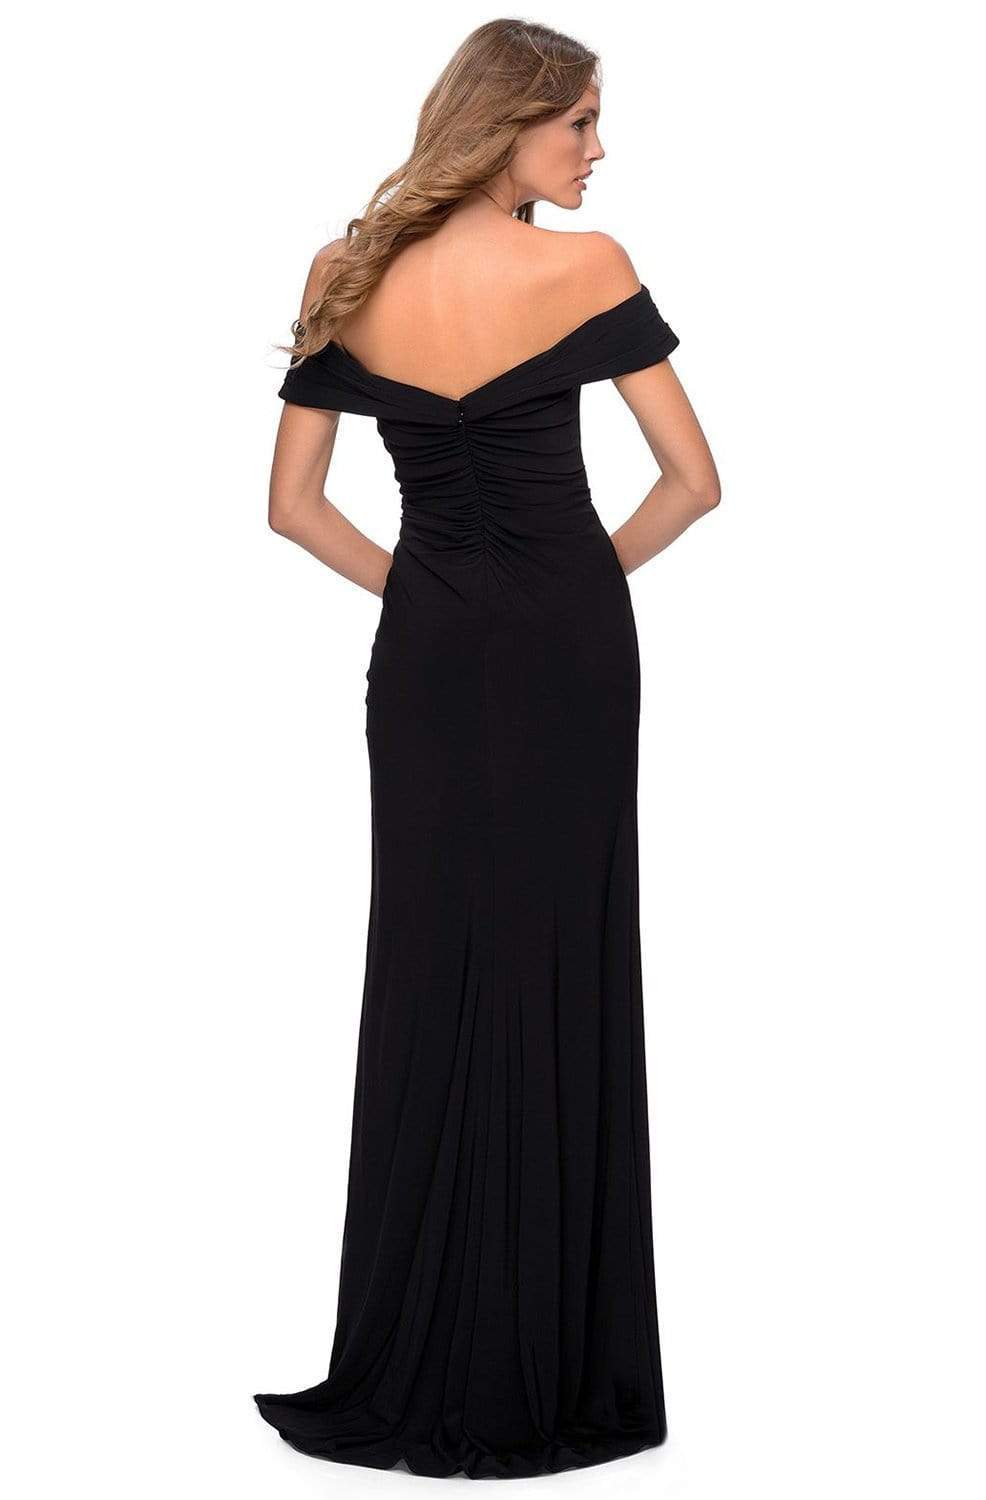 La Femme - Off Shoulder Jersey Dress 28389SC - 1 pc Black In Size 14 Available CCSALE